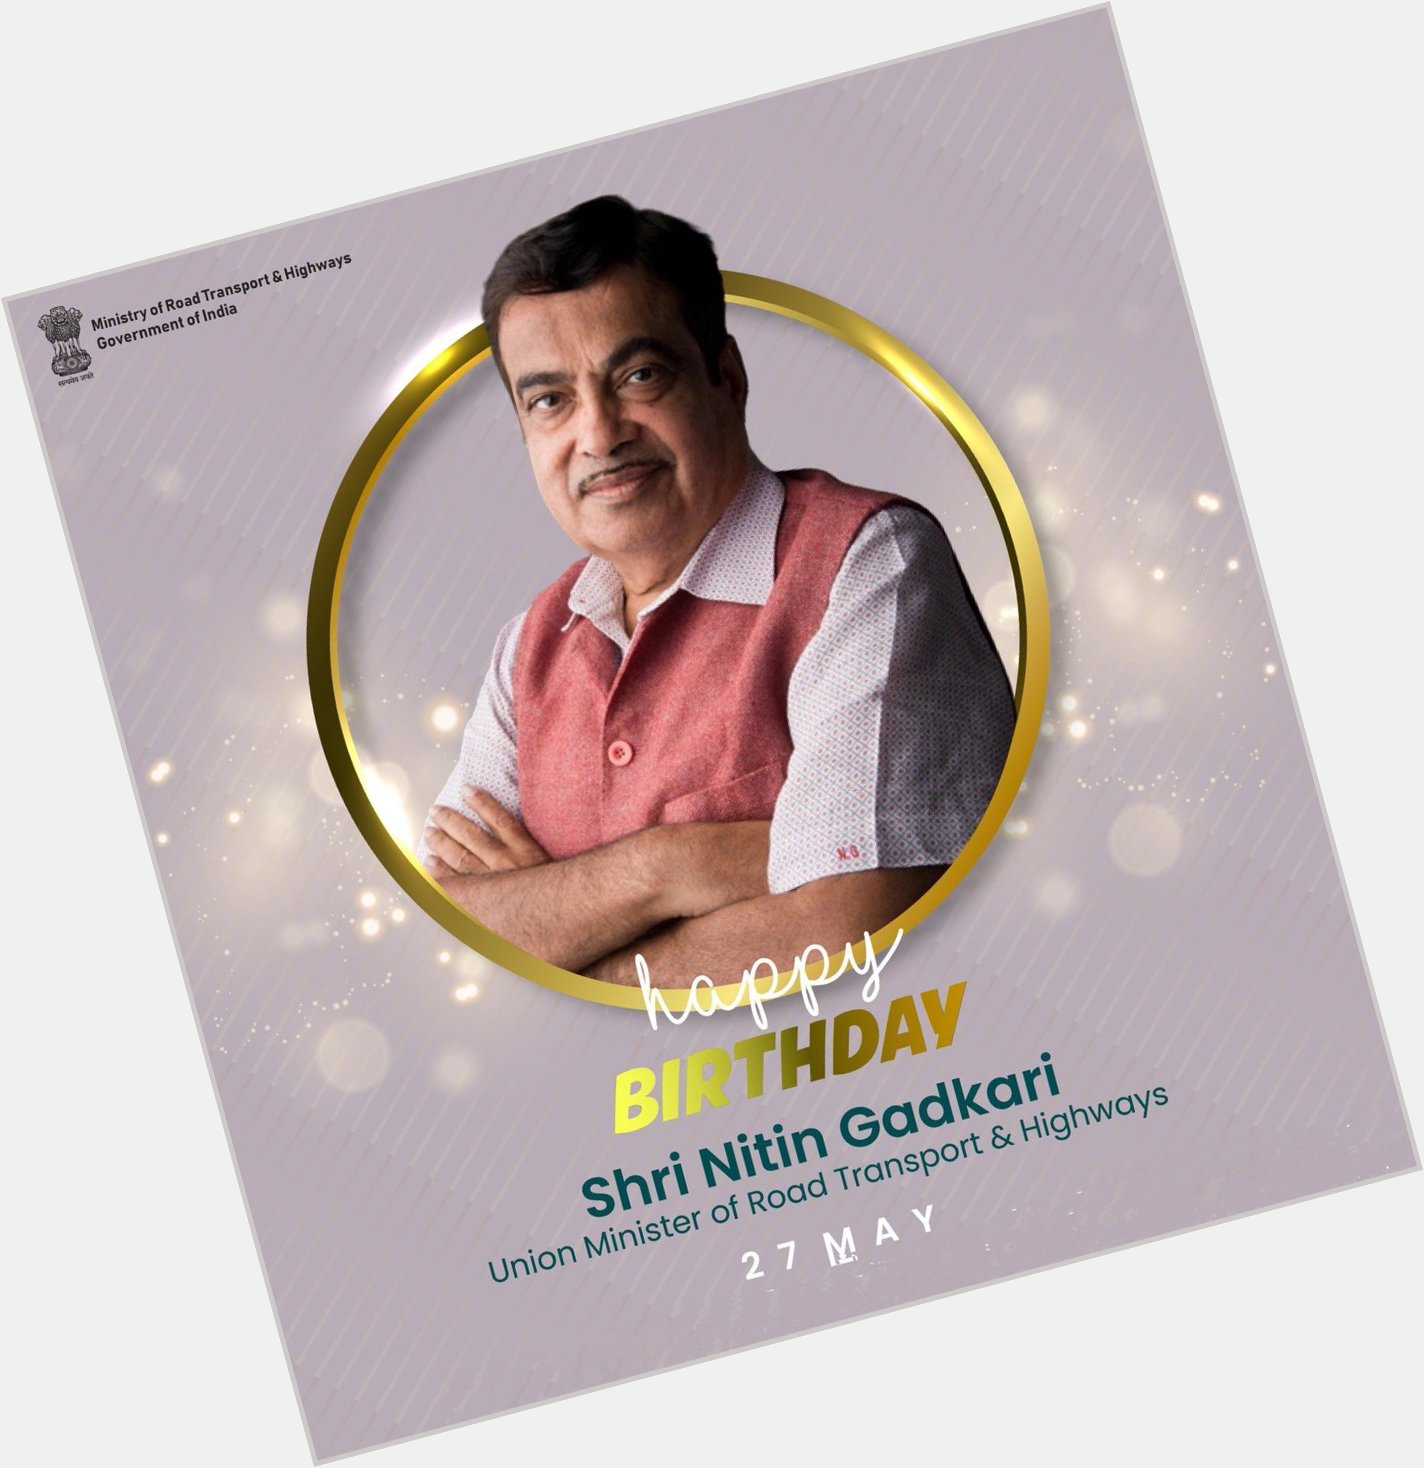    Wish you a Happy birthday Mr. Niti Gadkari G 